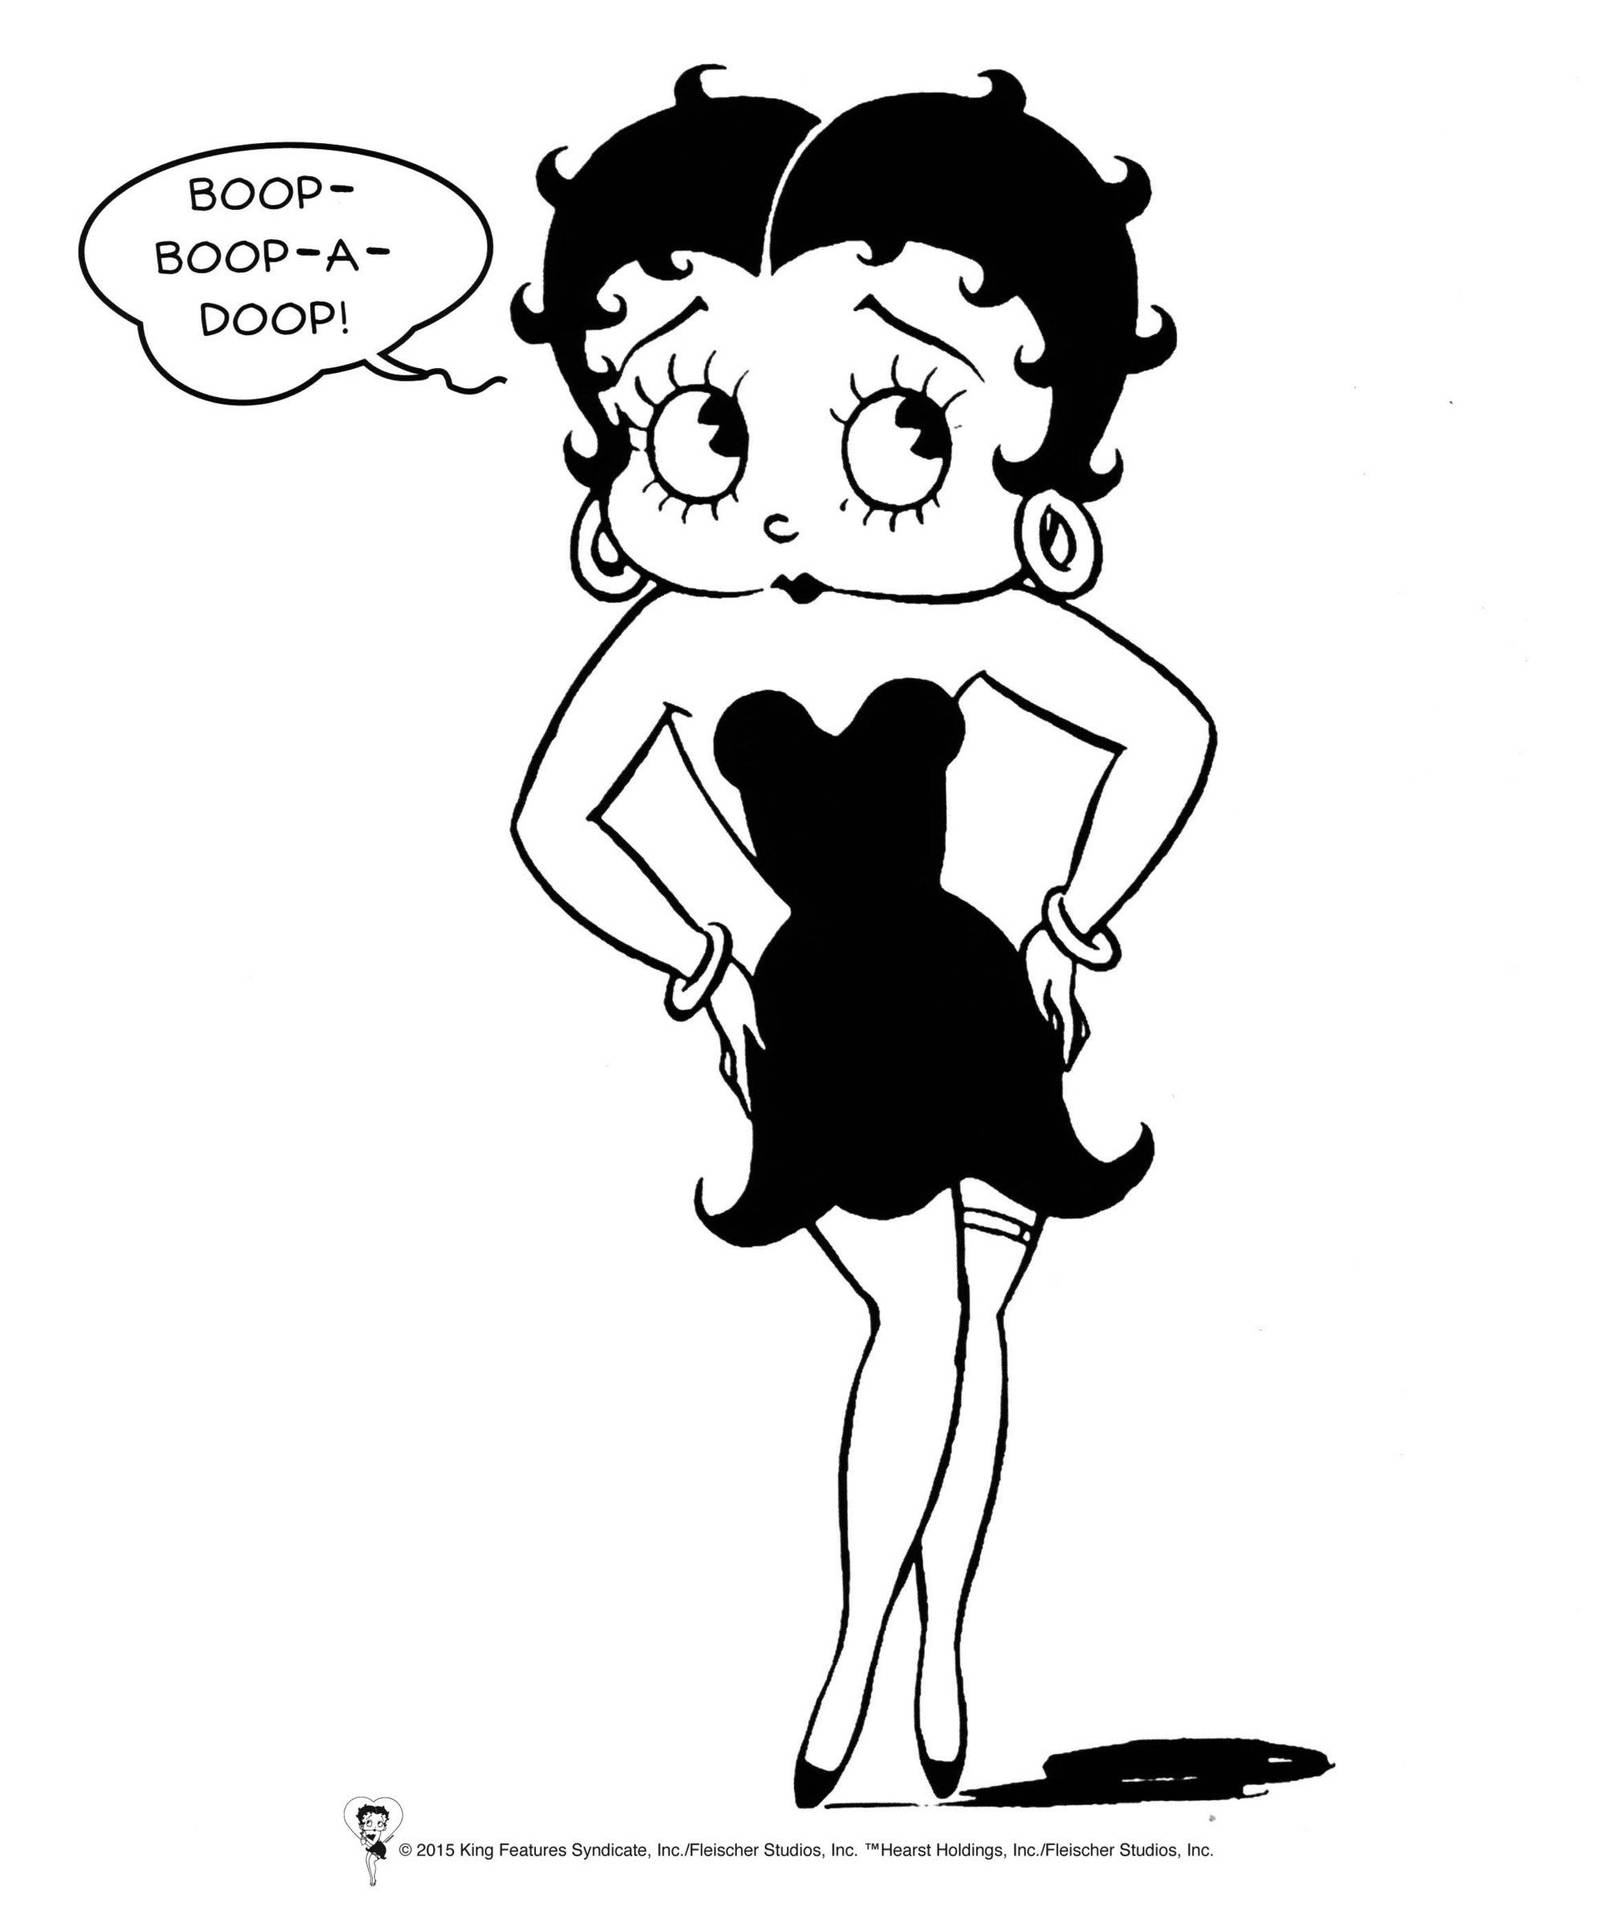 Betty Boop Comic Art Wallpaper